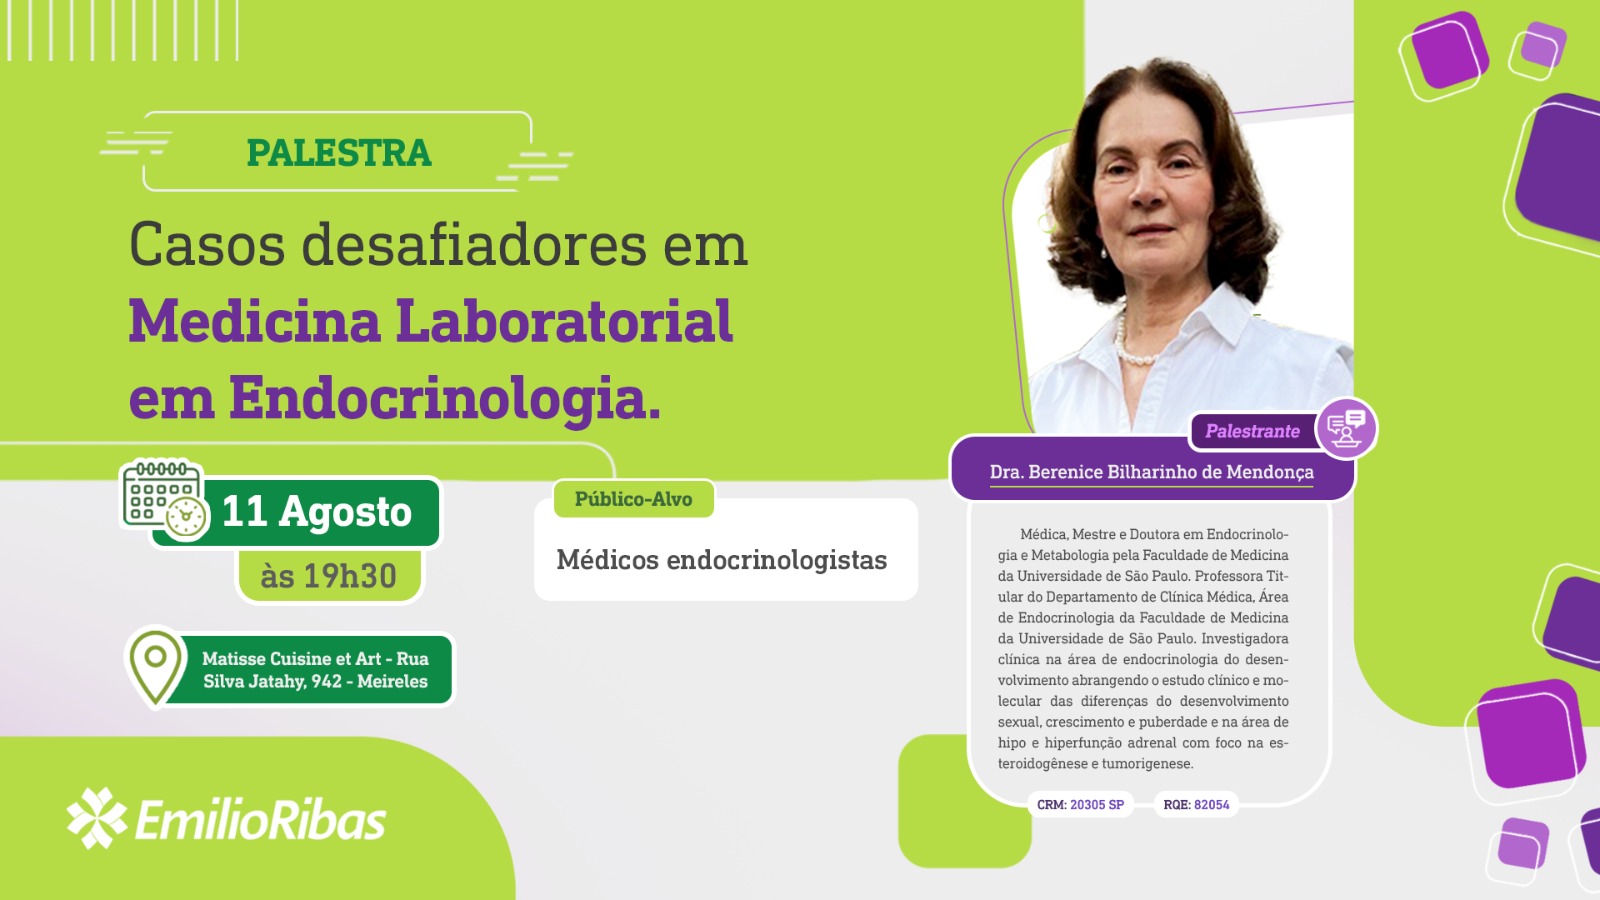 Palestra: Casos desafiadores em Medicina Laboratorial em Endocrinologia